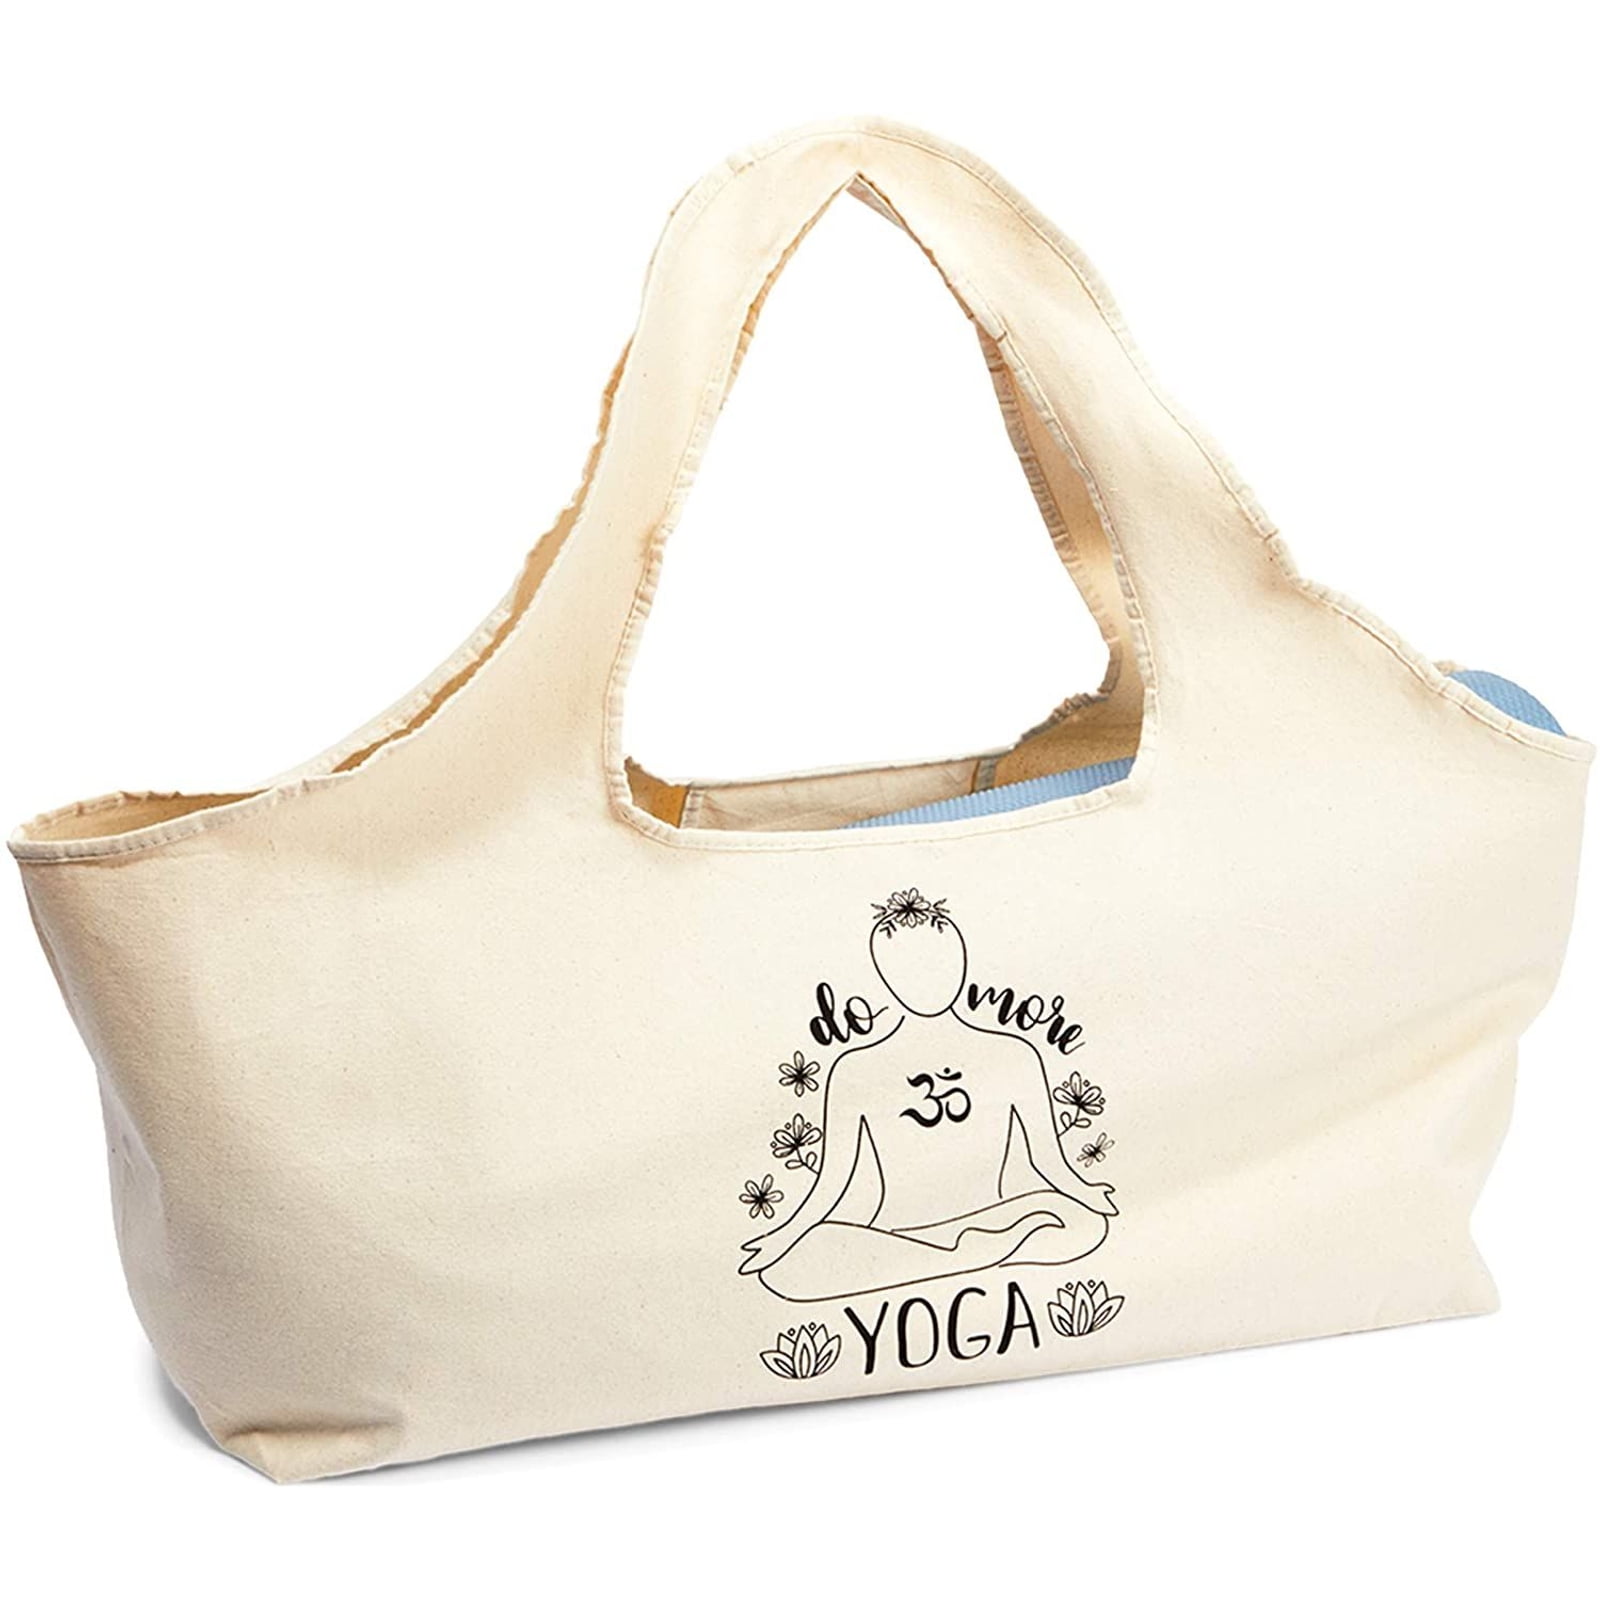 Mat Handmade Yoga Strap Shoulder Sling Adjustable Gym Tote Carry Exercise Bag 